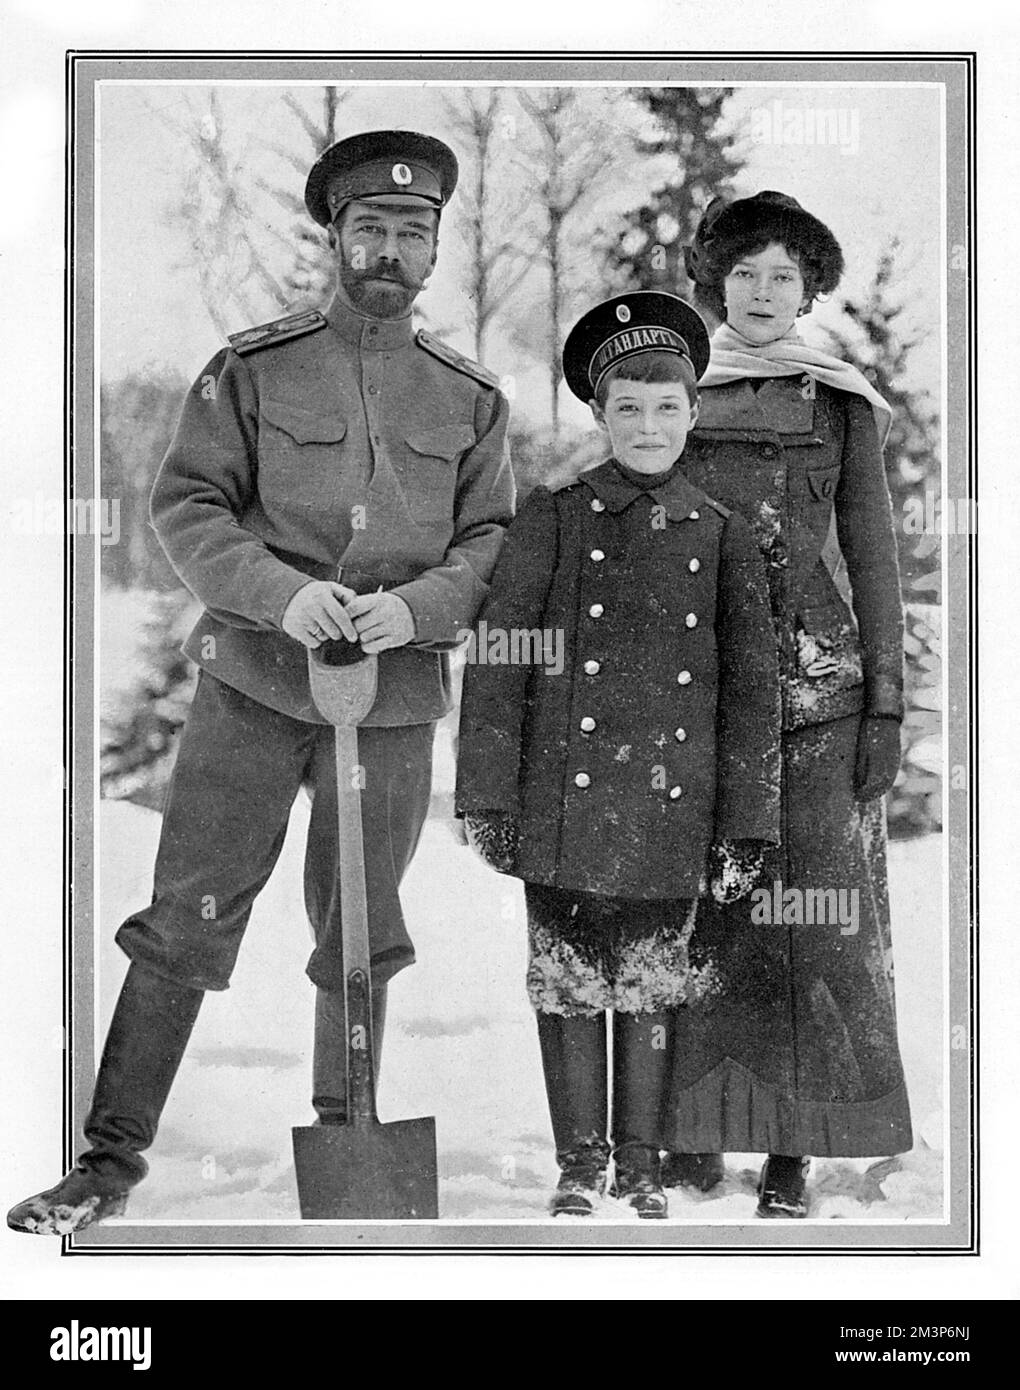 Zar Nicholas II. Von Russland wurde mit zwei seiner Kinder, der Großherzogin Tatiana und Alexei, dem Zarewitsch, fotografiert und baute eine Festung aus Schnee auf dem Gelände des Kaiserpalastes in Tsarskoye Selo in Petrograd. 1915 Stockfoto